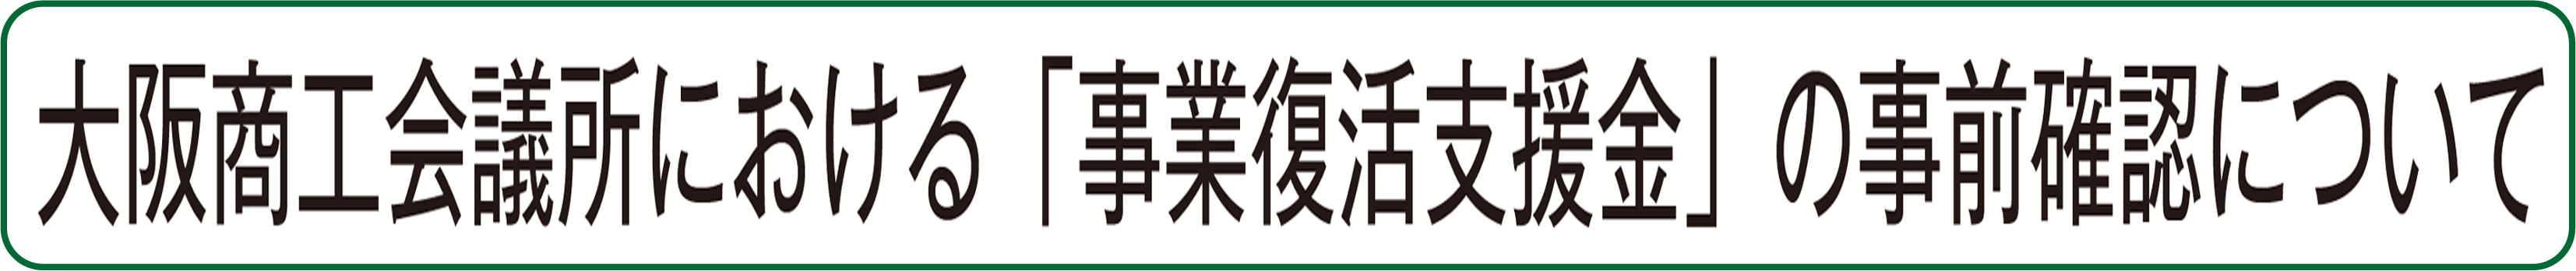 大阪商工会議所における「月次支援金」の事前確認について